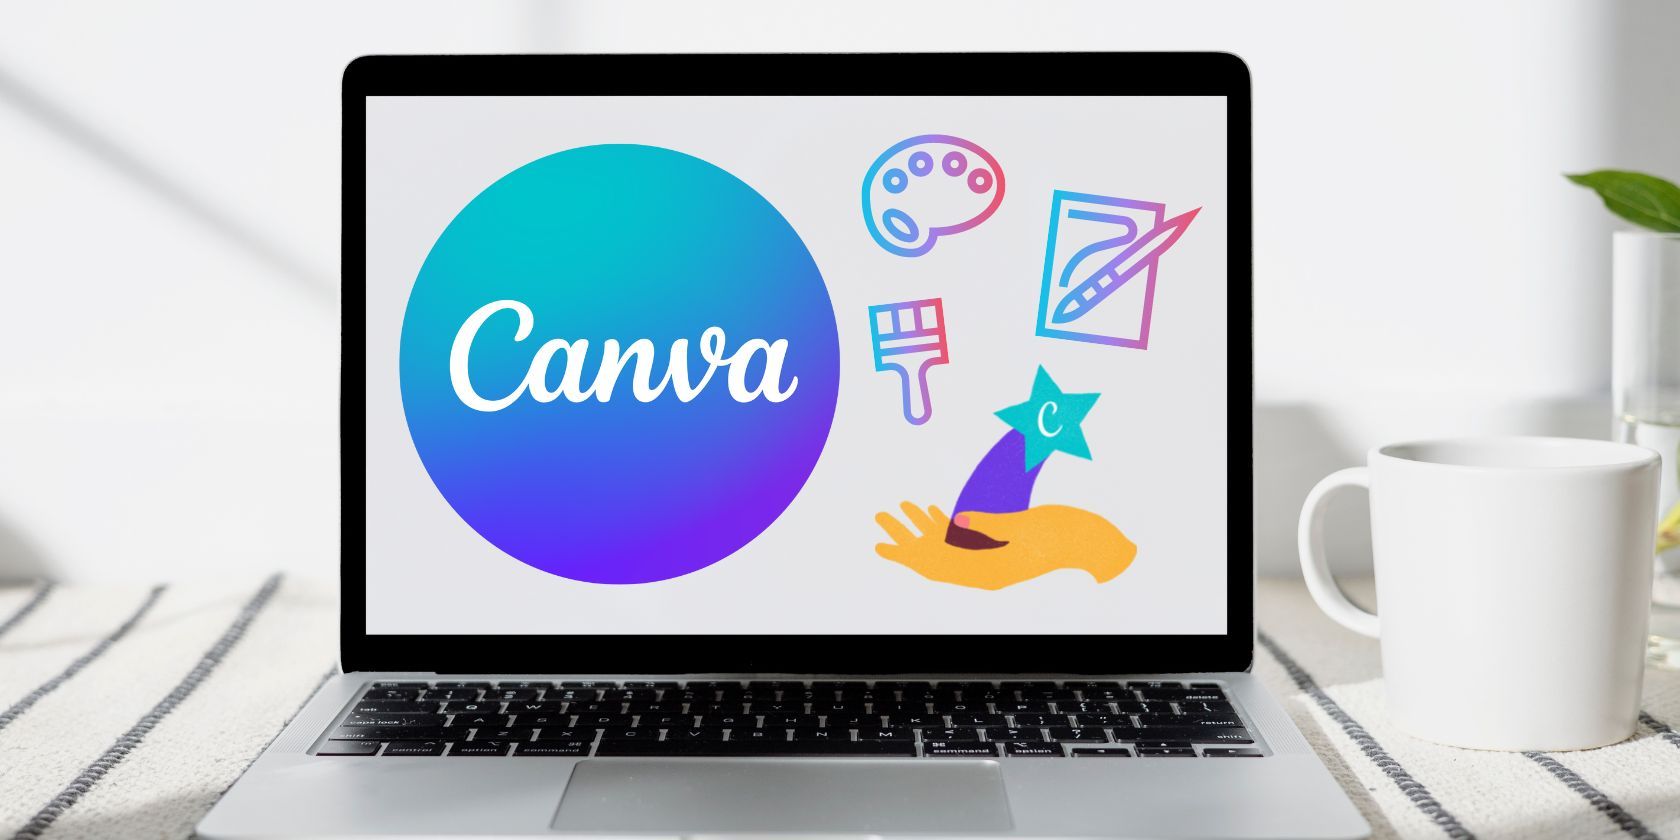 hidden canva features logo on a laptop